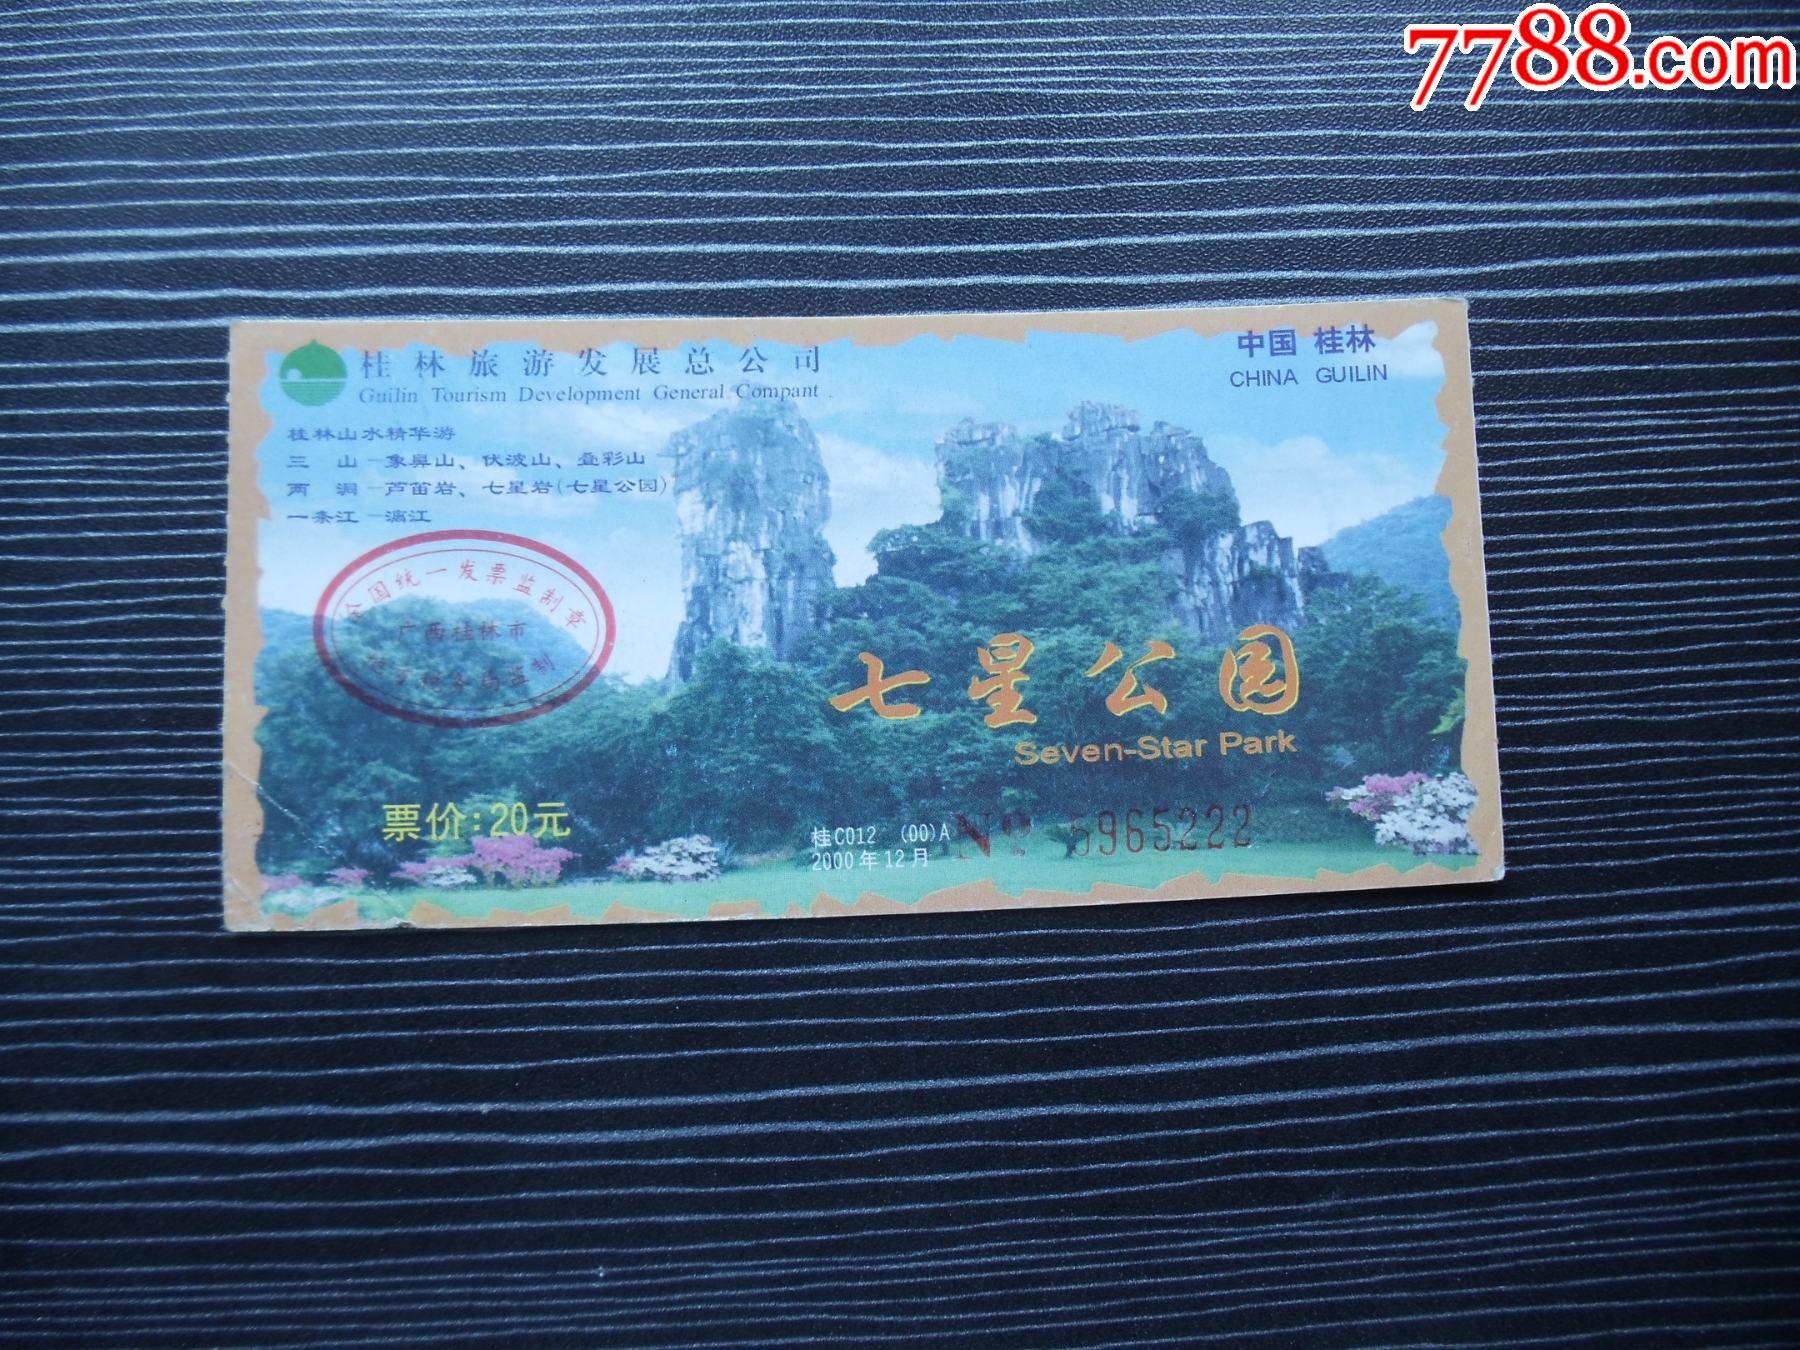 桂林七星公园免票政策图片